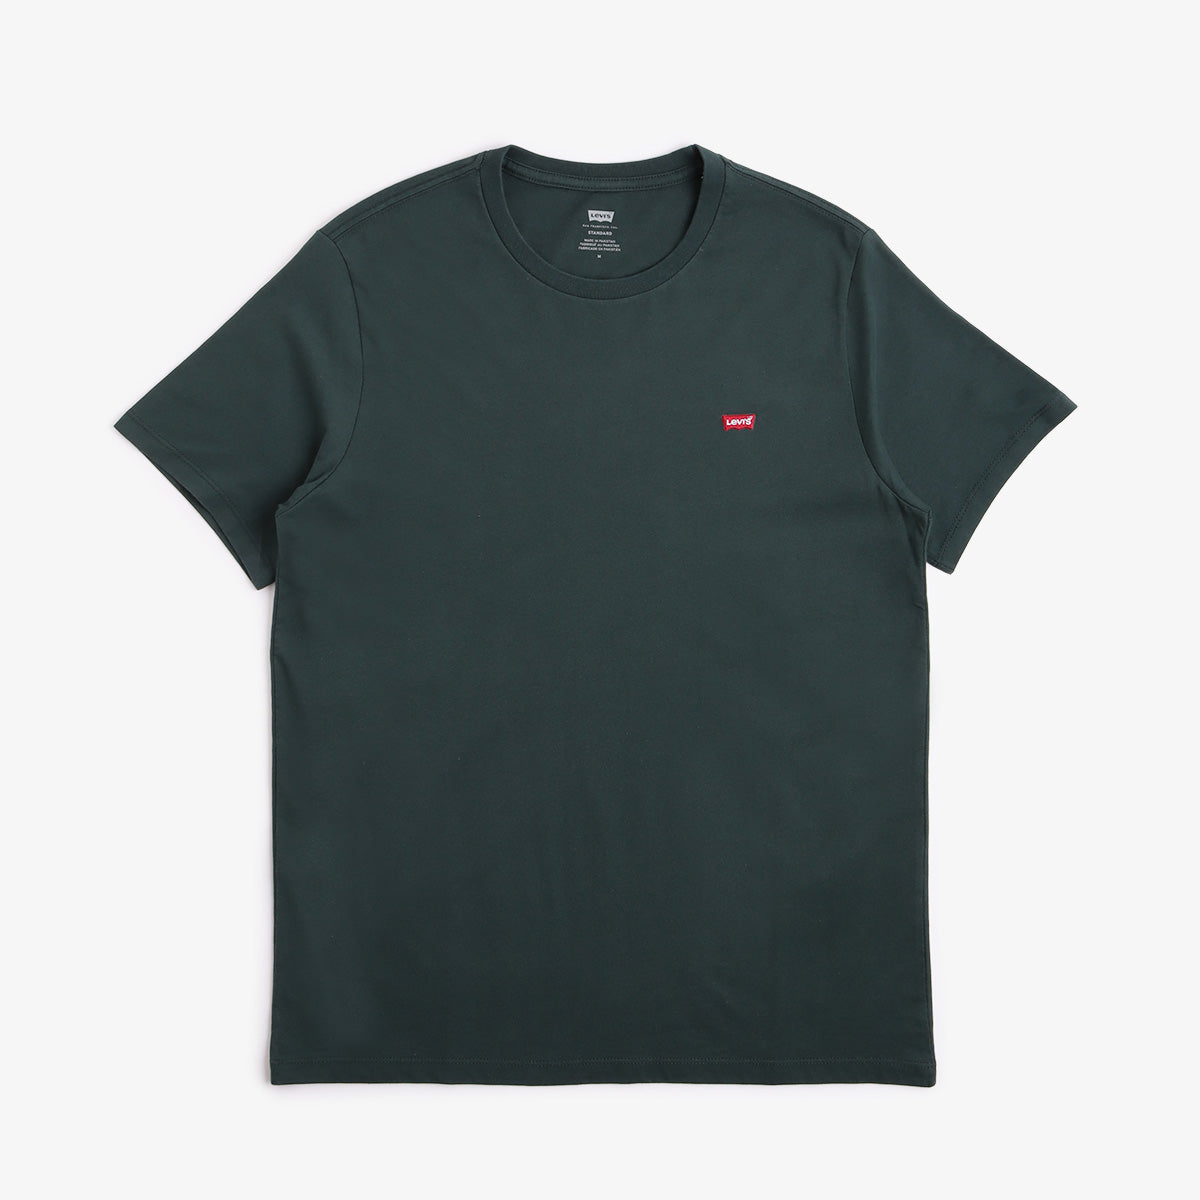 Levis Original Housemark T-Shirt